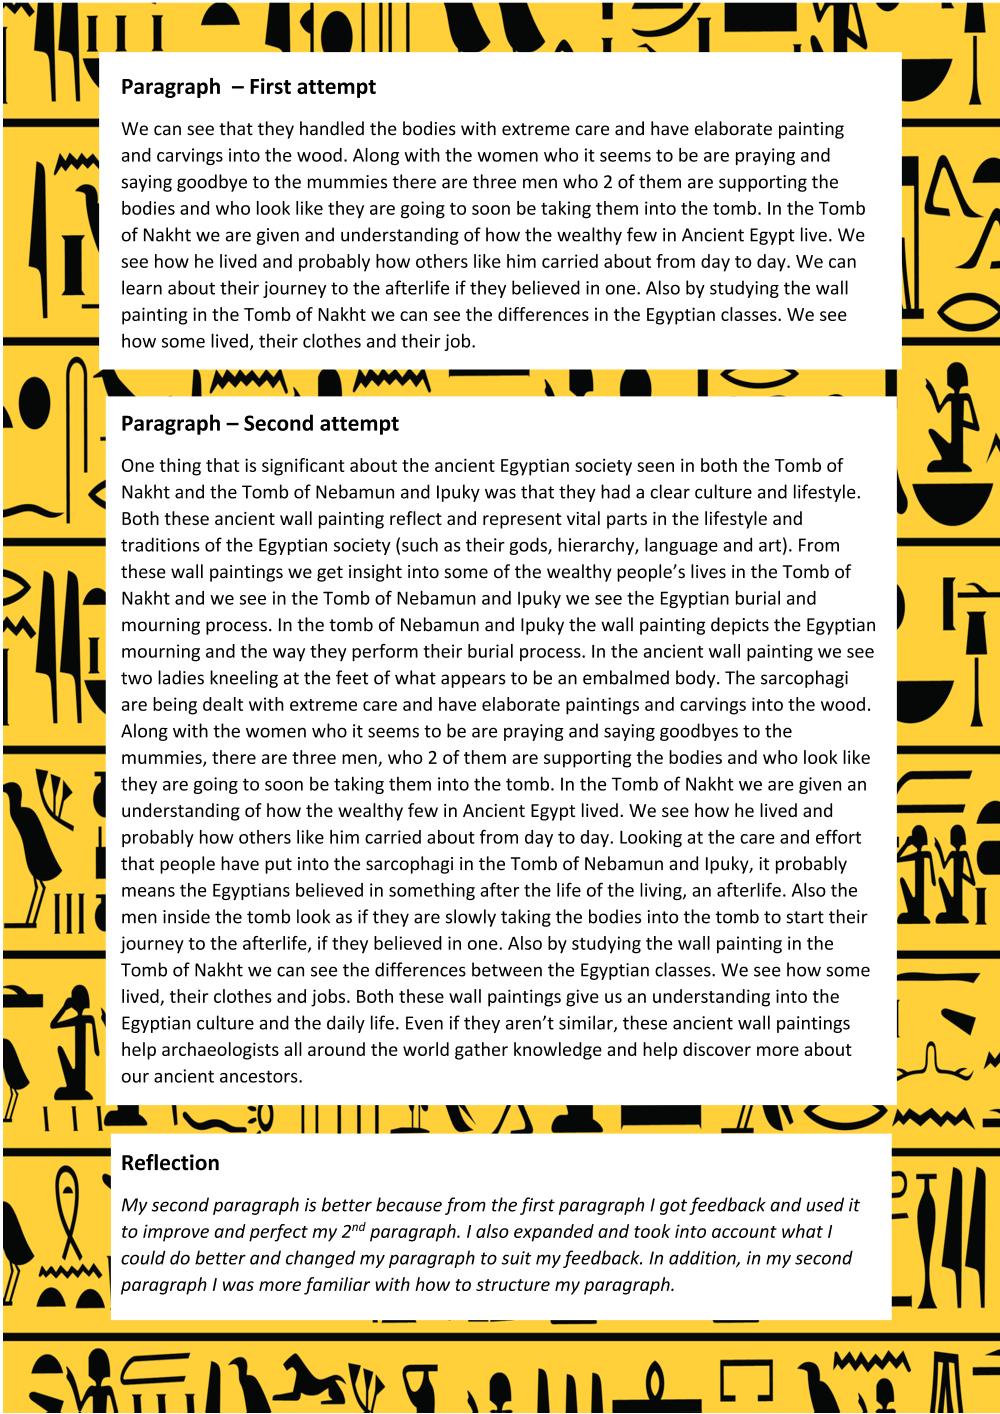 5 paragraph essay about egypt